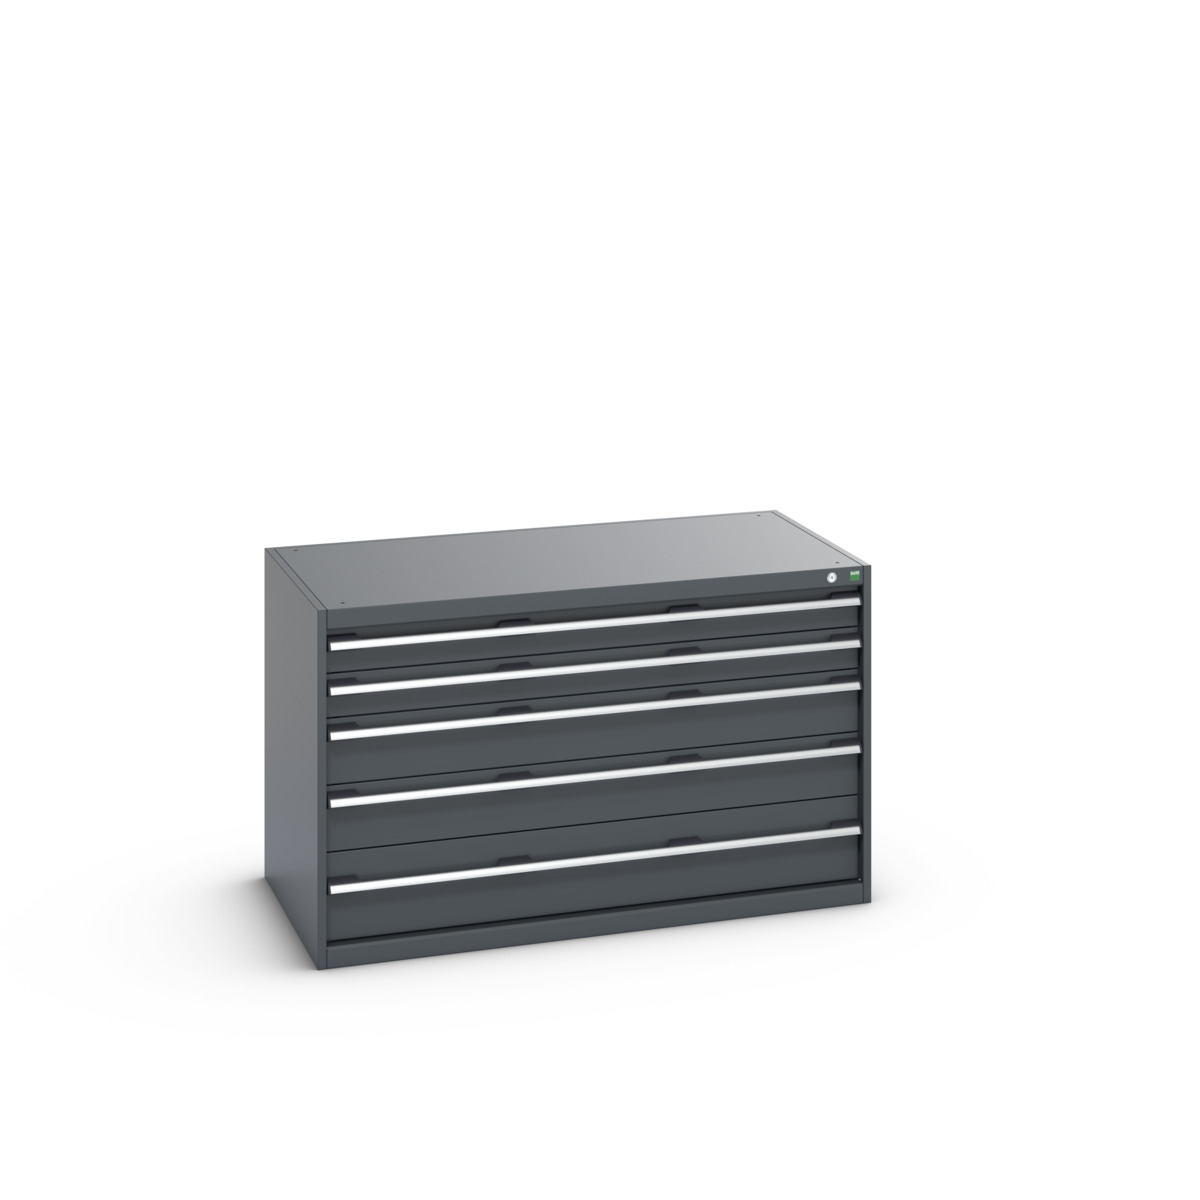 40030008.77V - cubio drawer cabinet